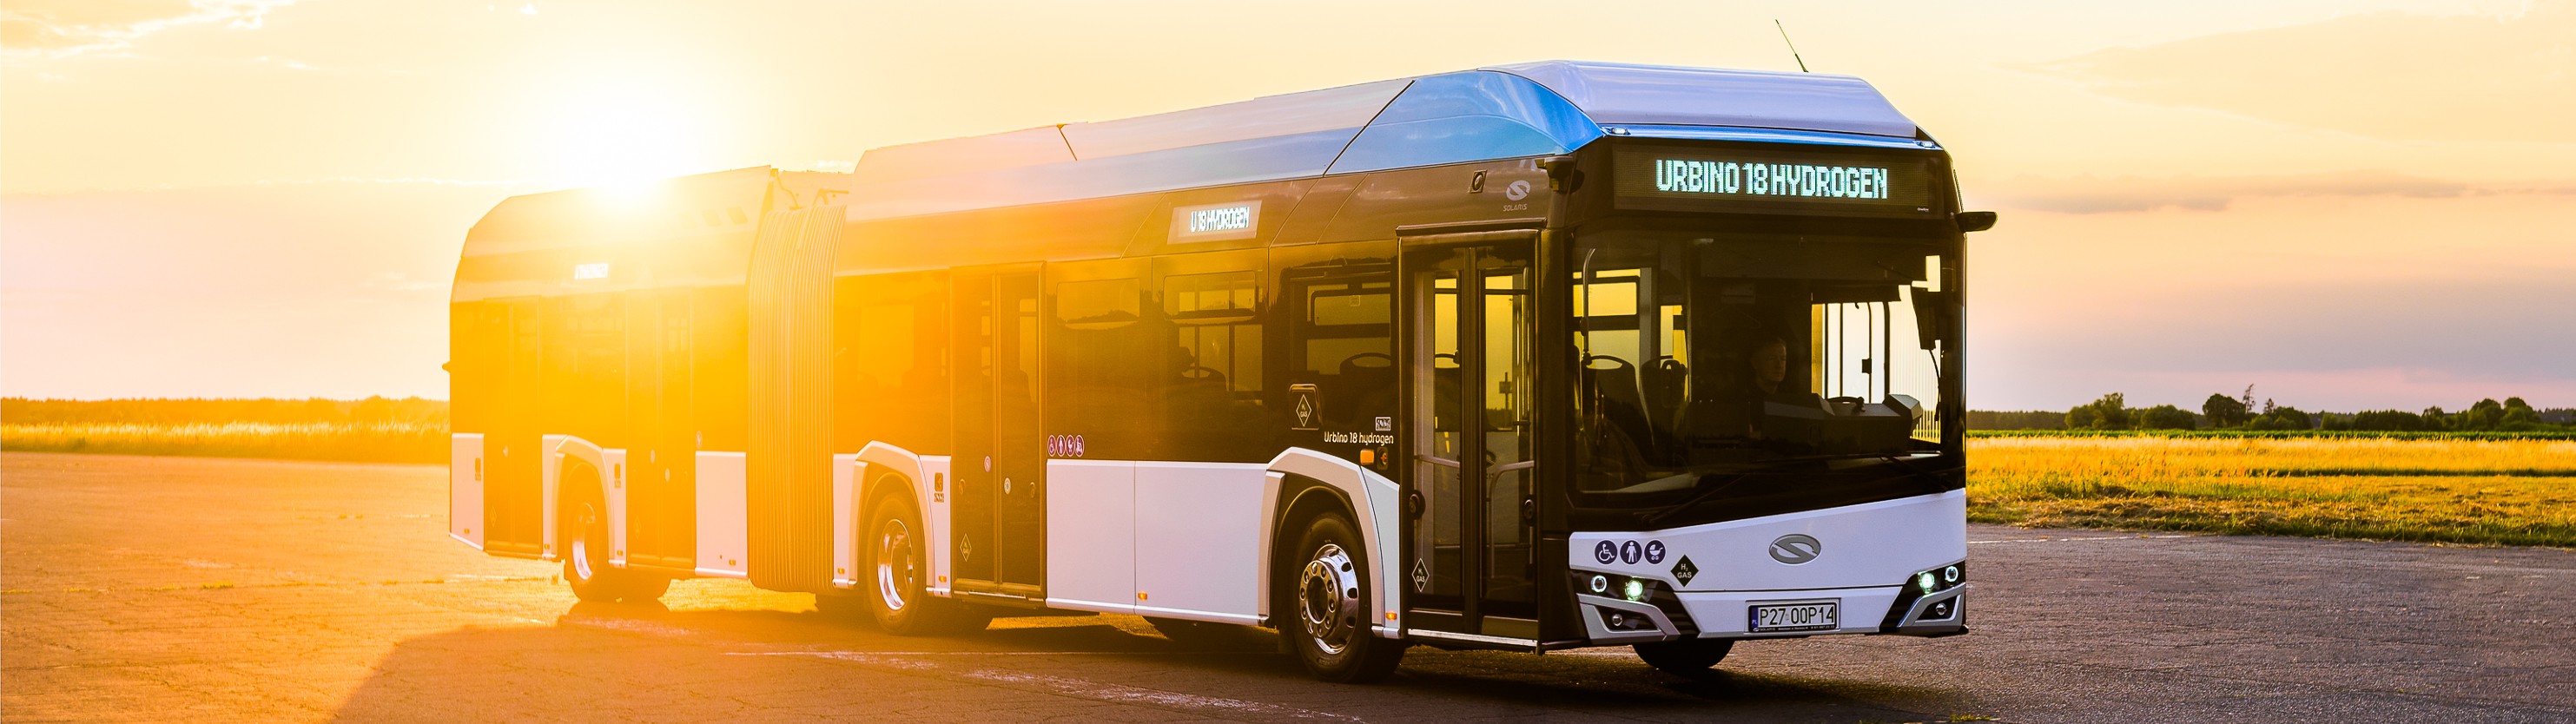 Premiera online autobusu wodorowego Solaris Urbino 18 hydrogen już 14 września